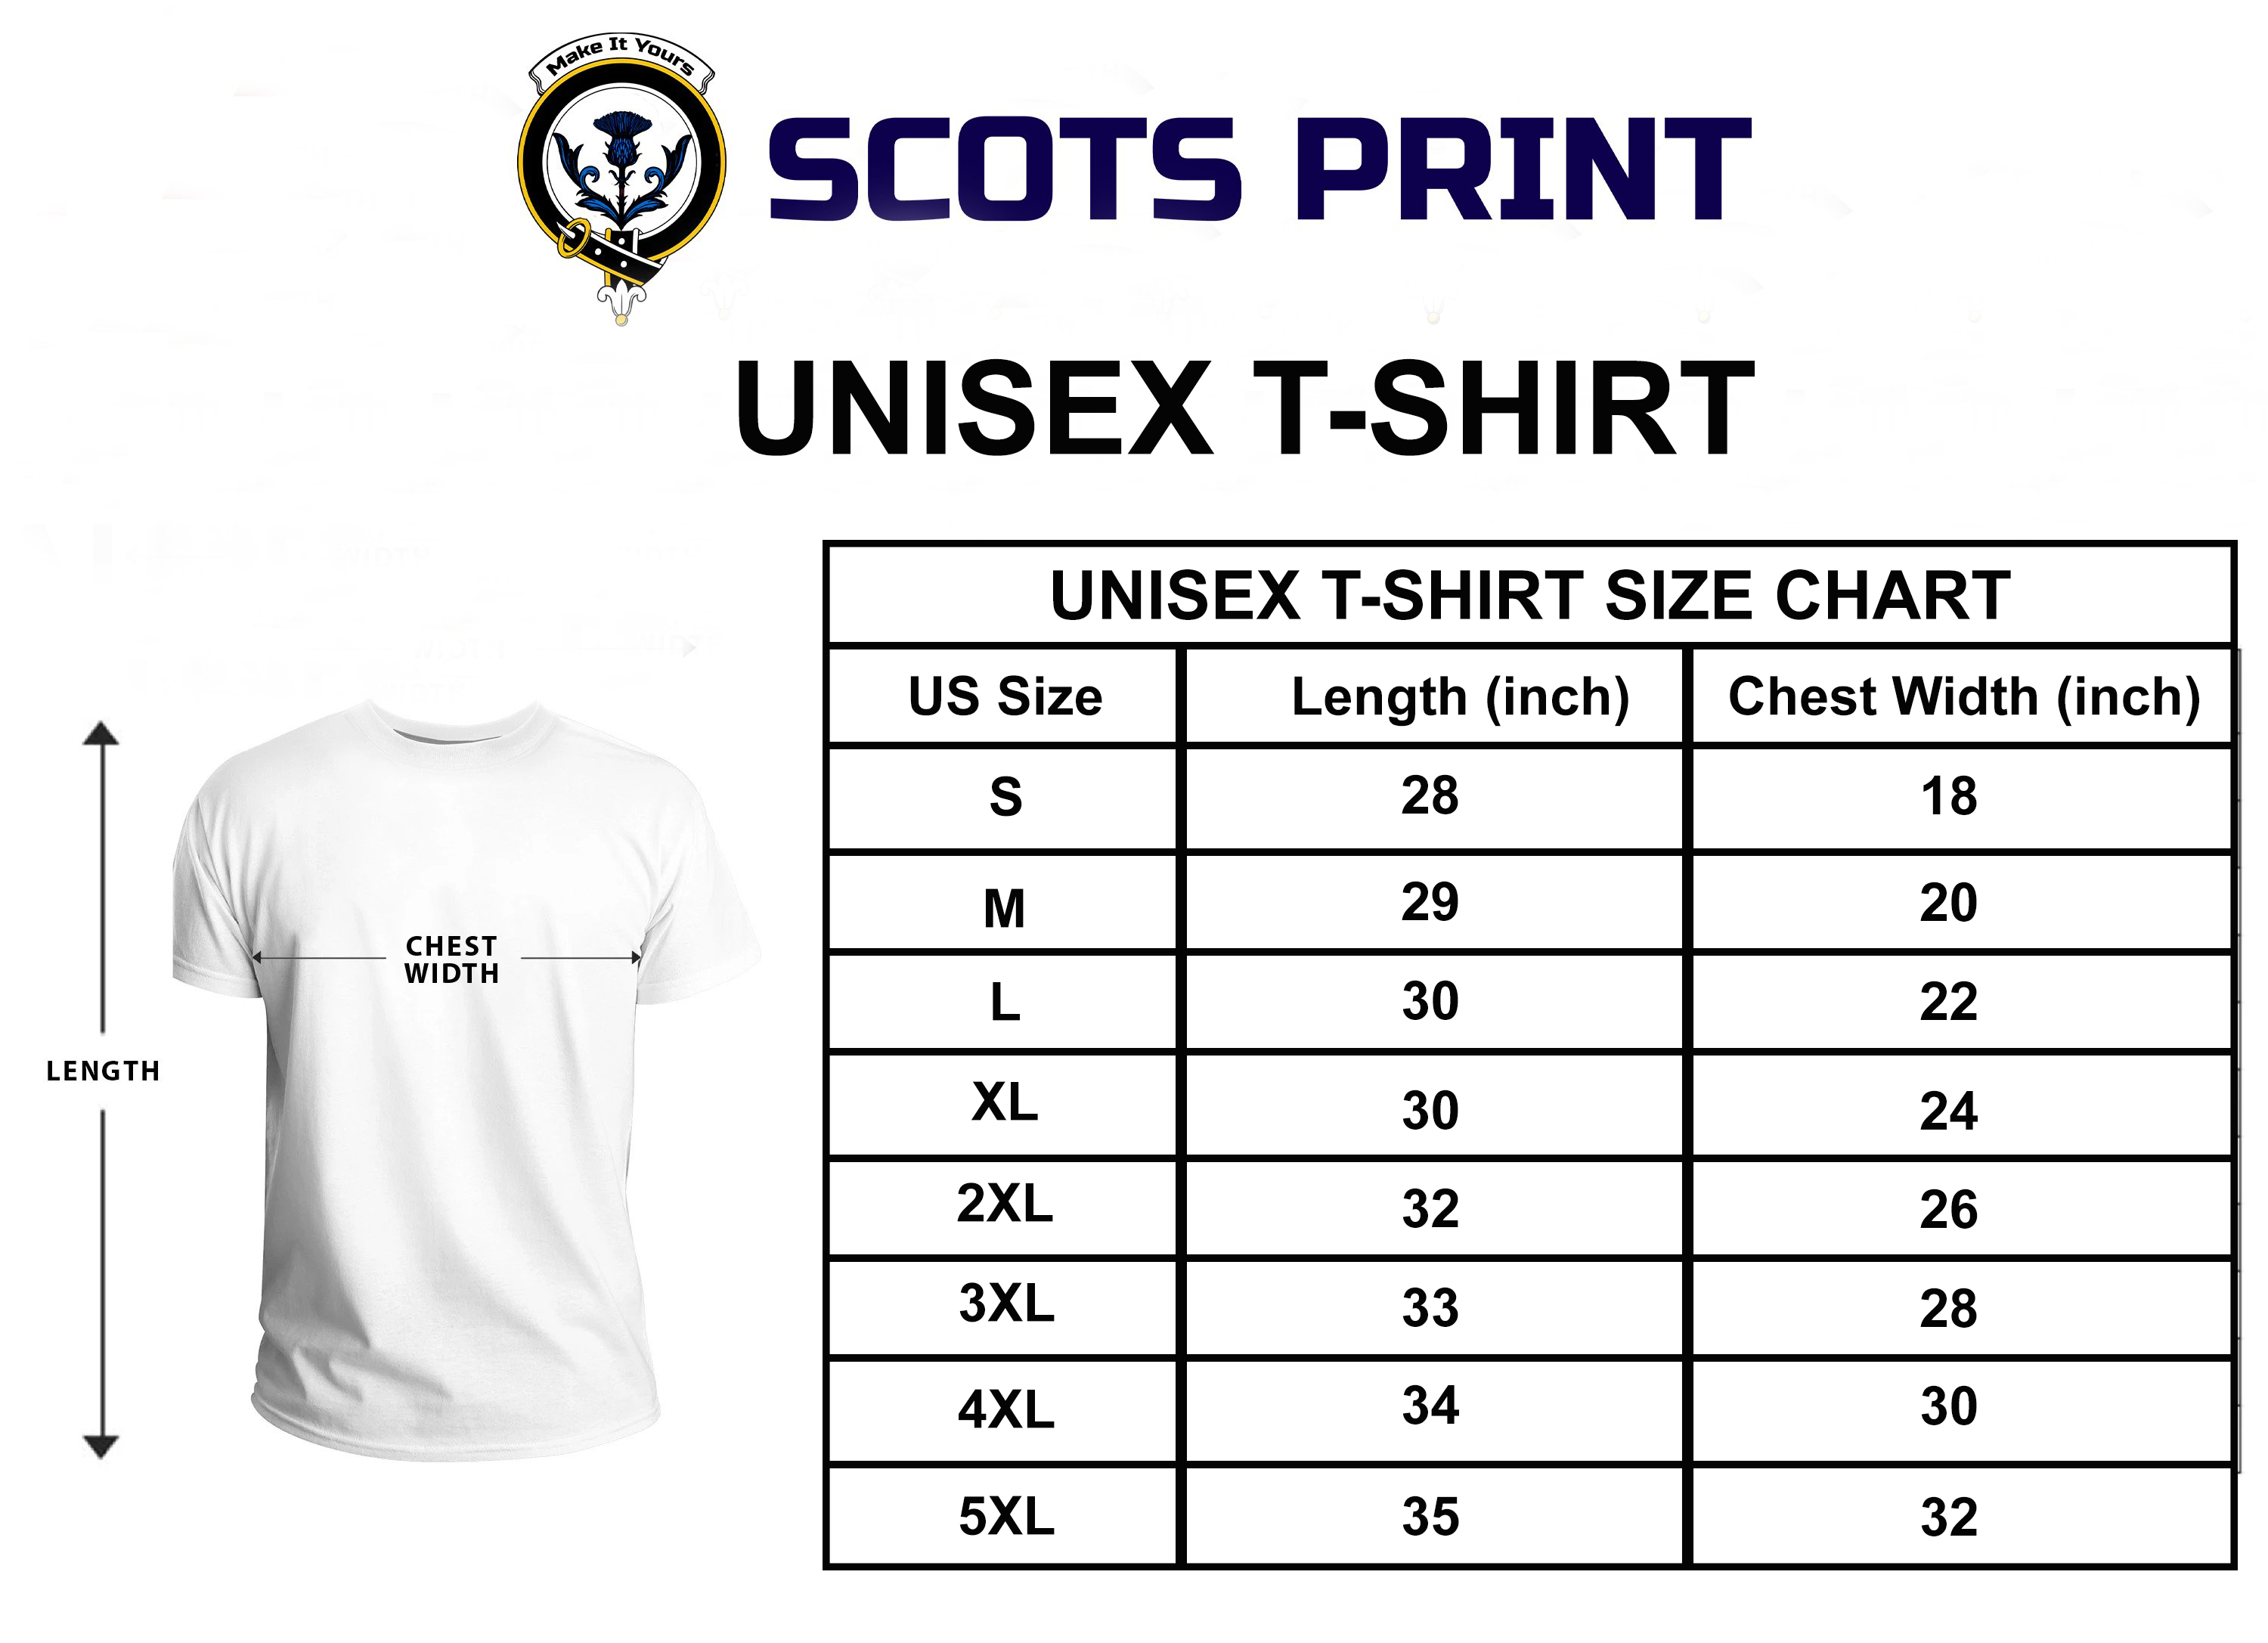 Udny Tartan Crest T-shirt - I'm not yelling style